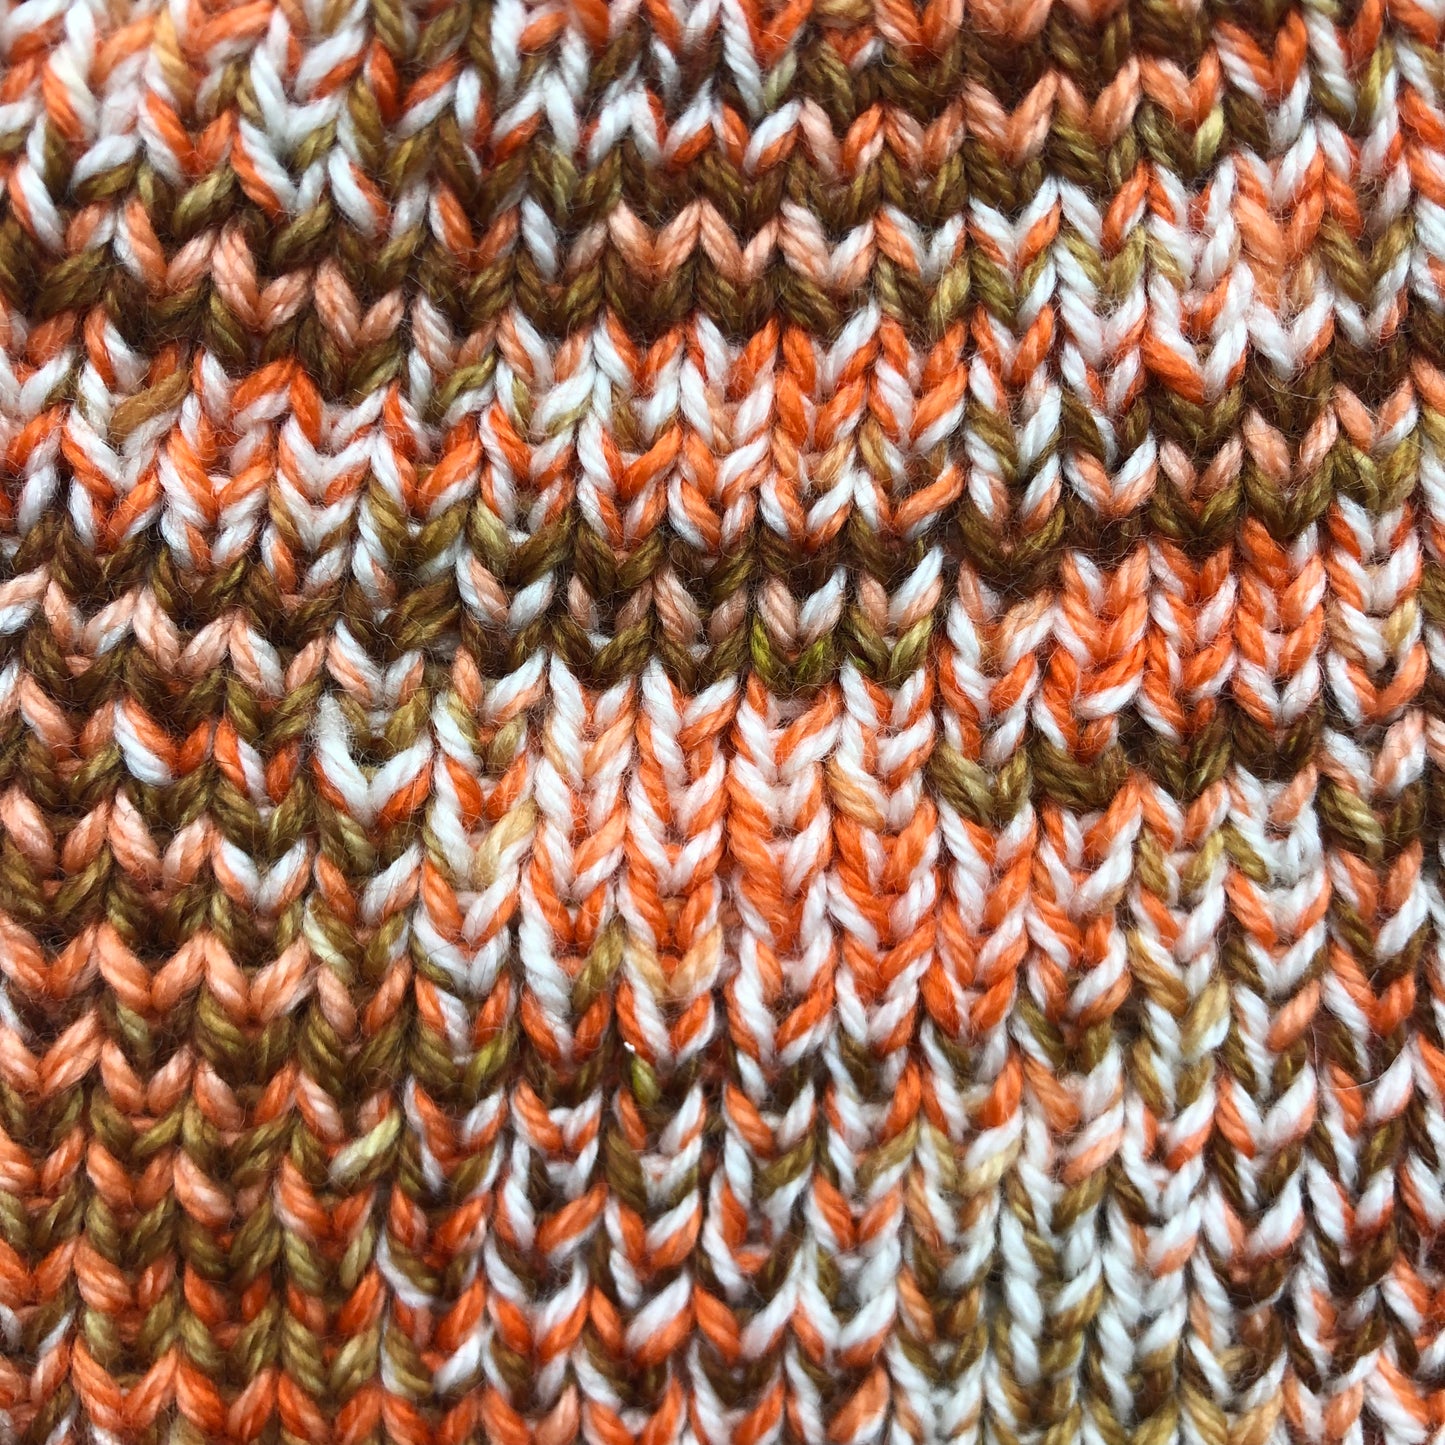 Tuque / bonnet en tricot extensible (taille unique)